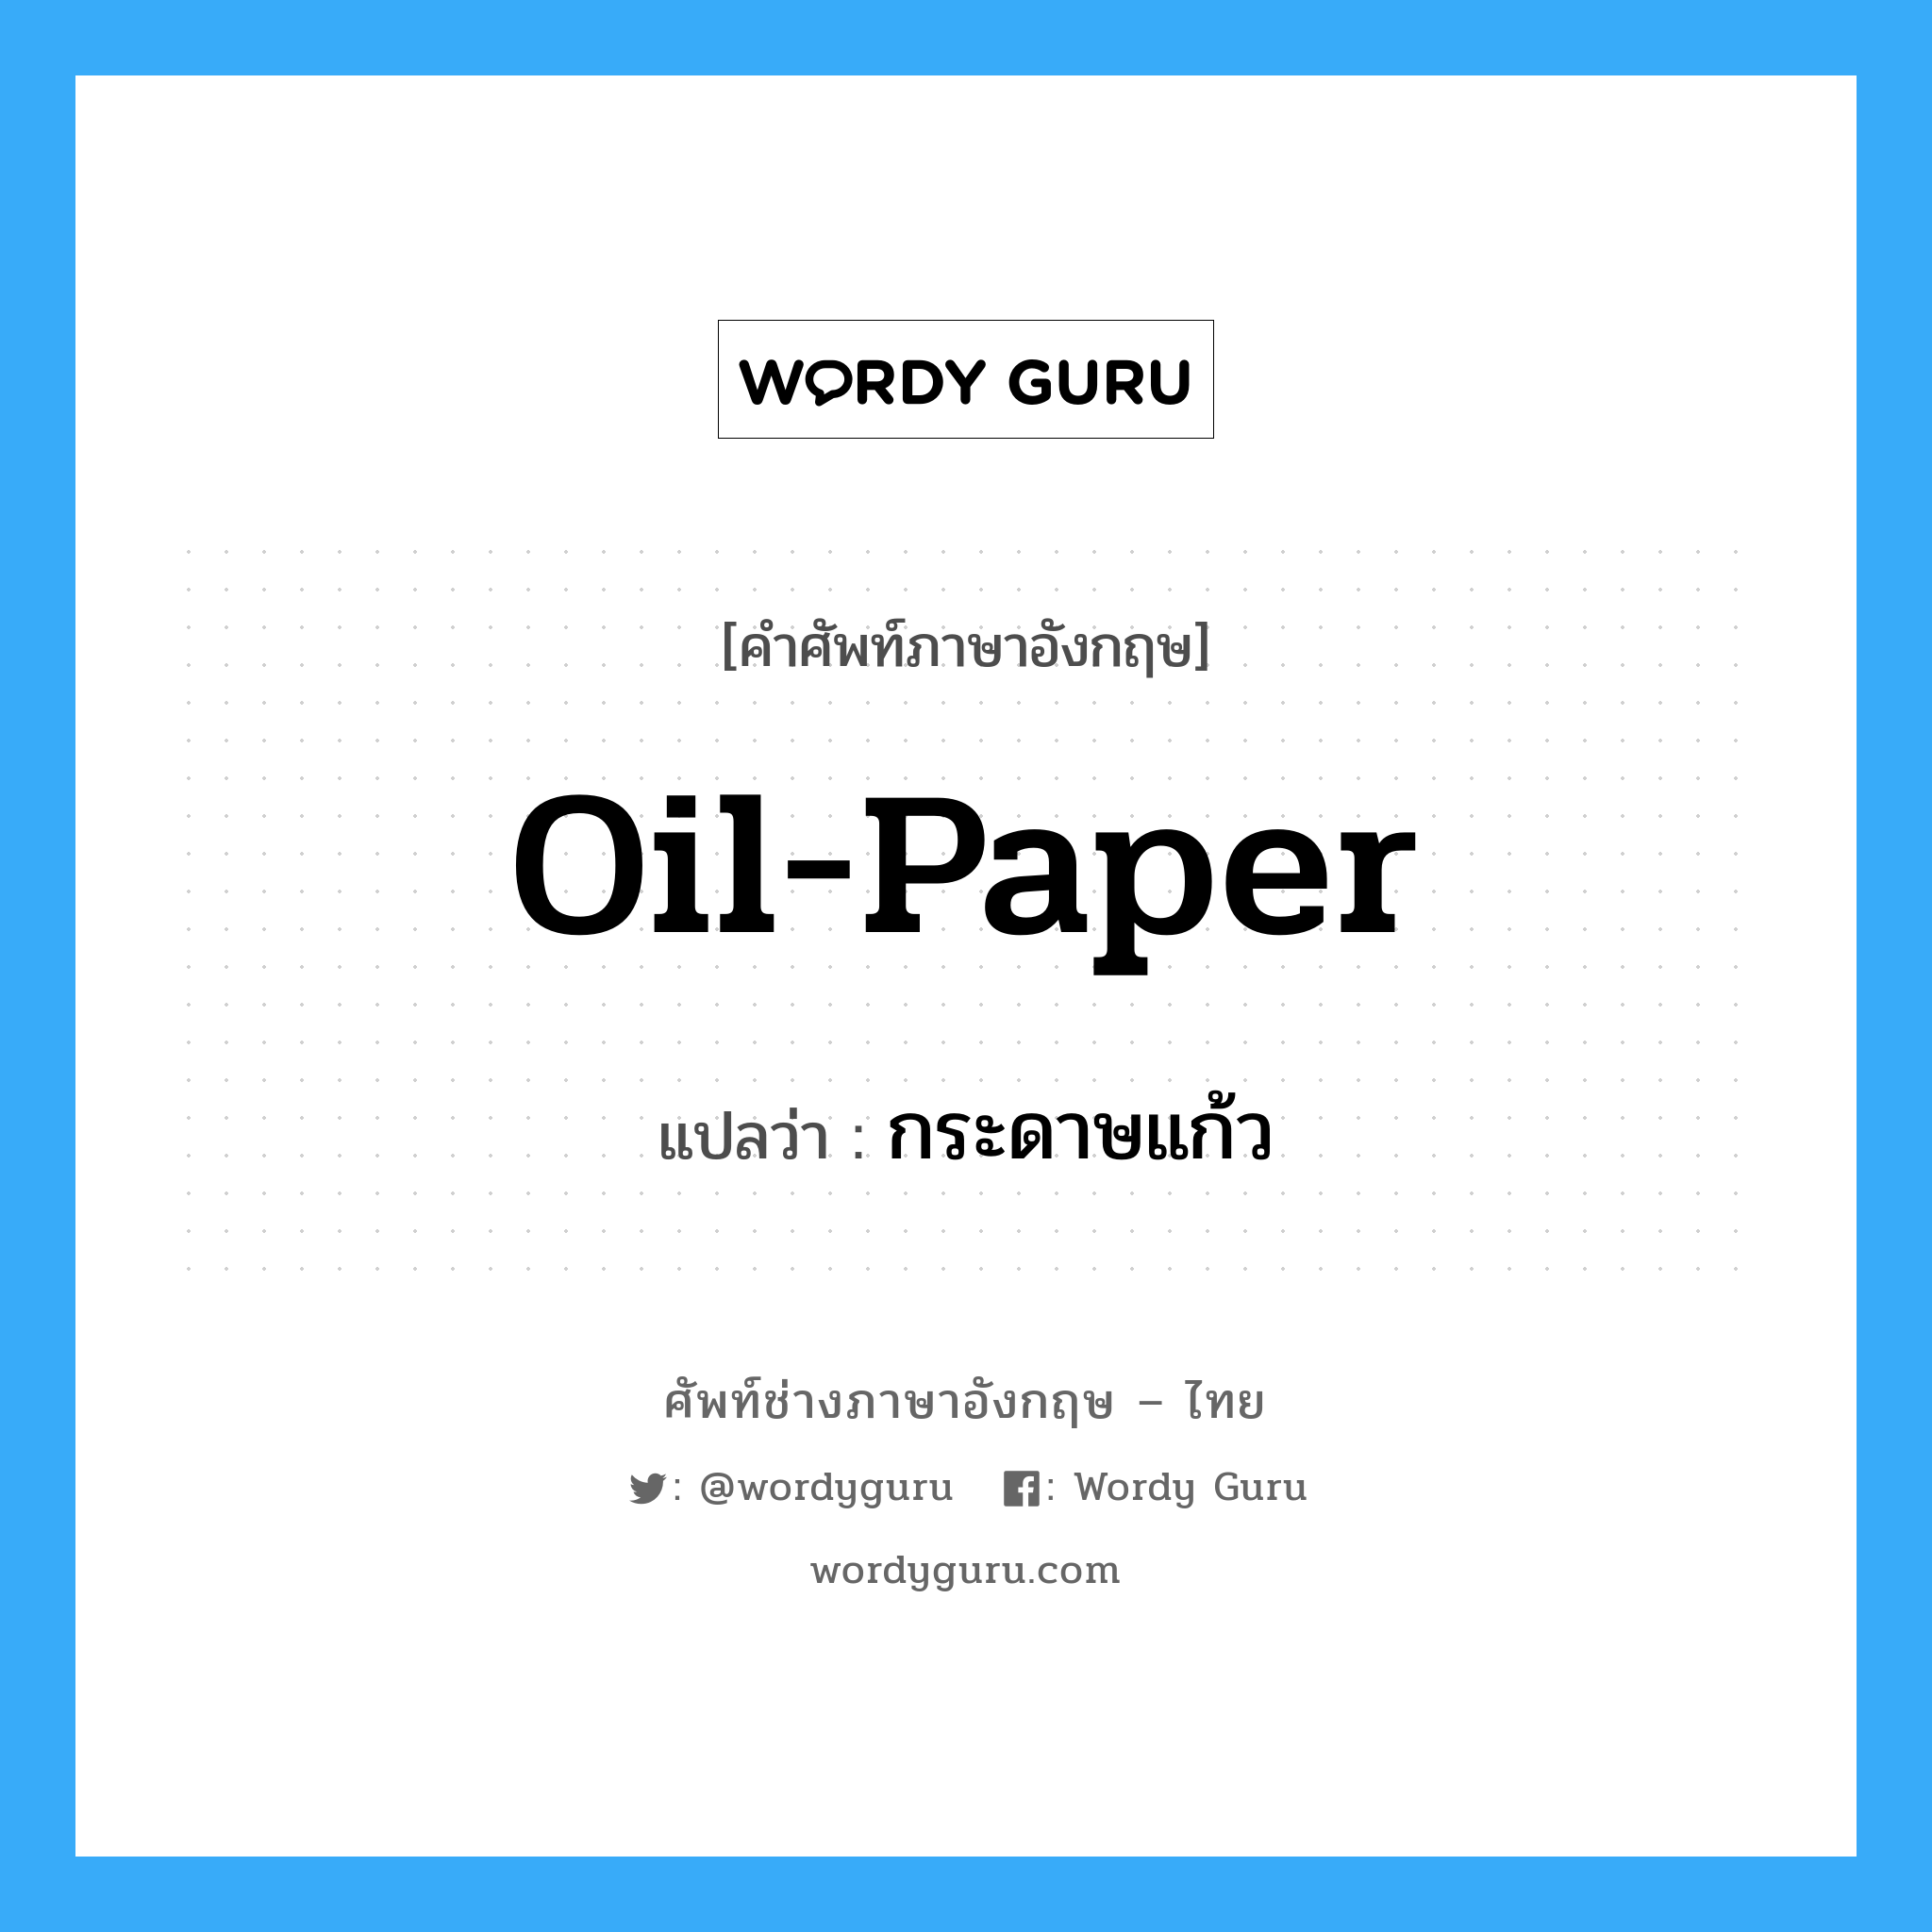 oil paper แปลว่า?, คำศัพท์ช่างภาษาอังกฤษ - ไทย oil-paper คำศัพท์ภาษาอังกฤษ oil-paper แปลว่า กระดาษแก้ว